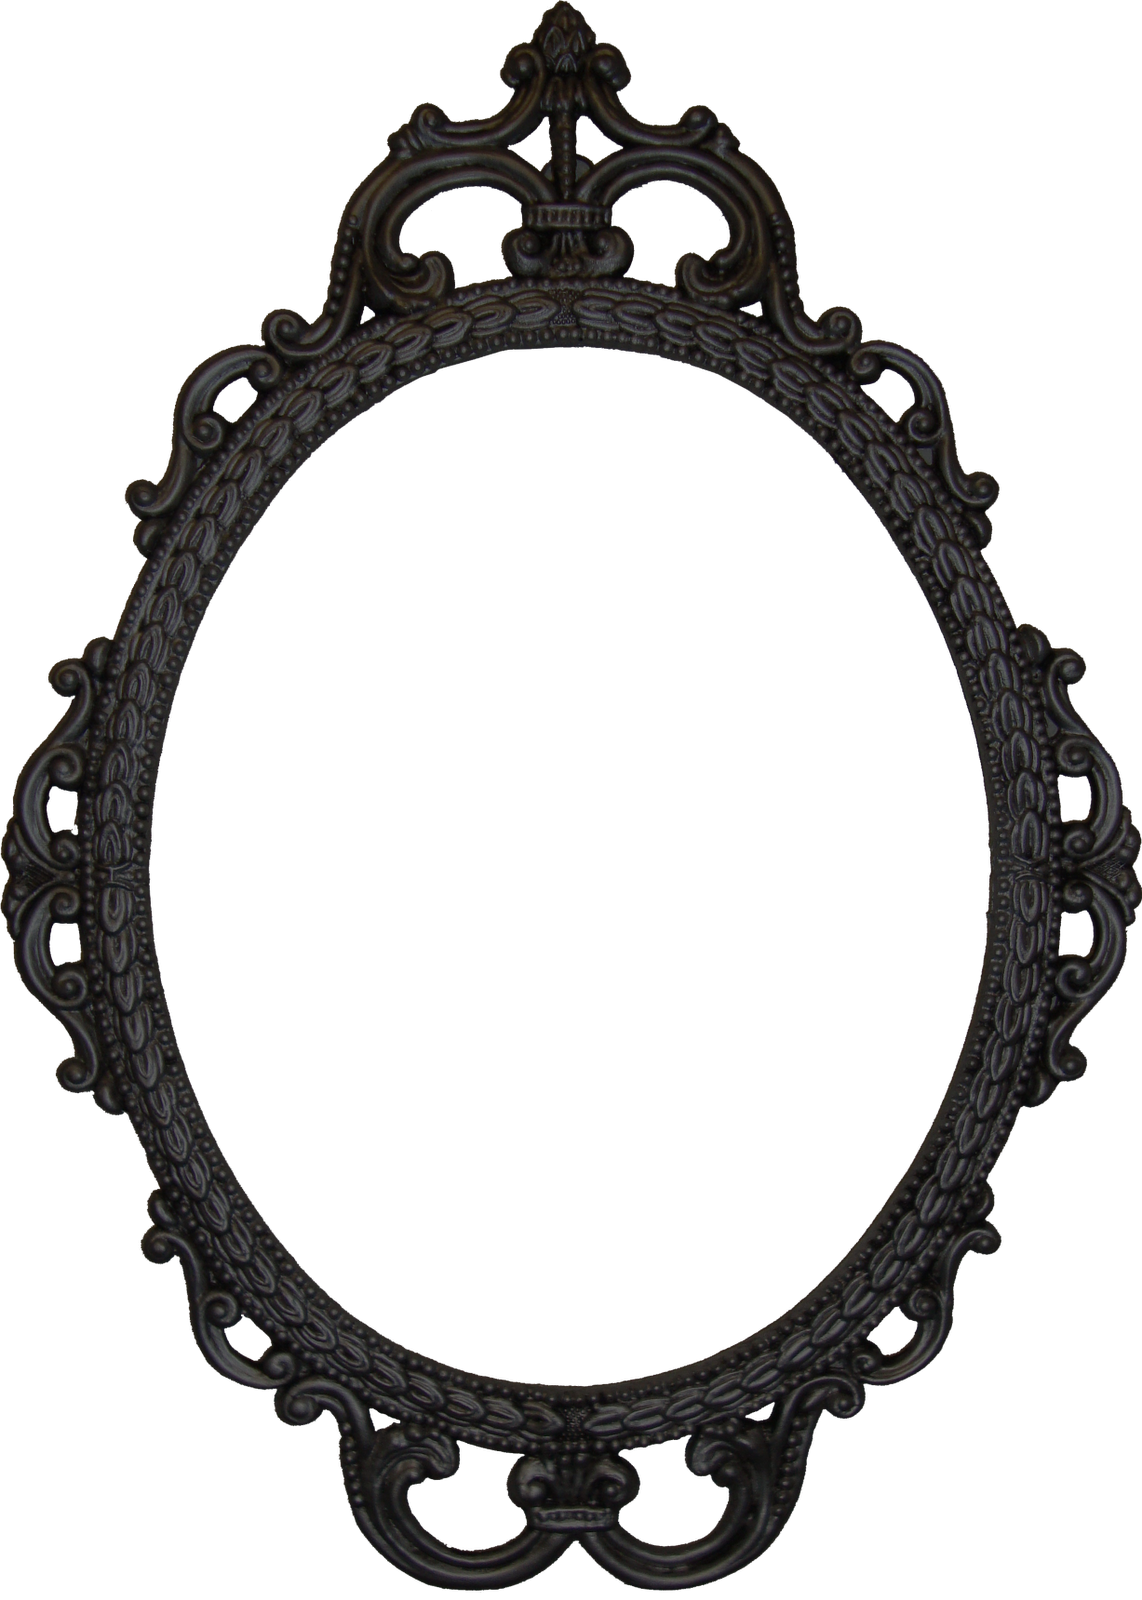 Oval fancy mirror